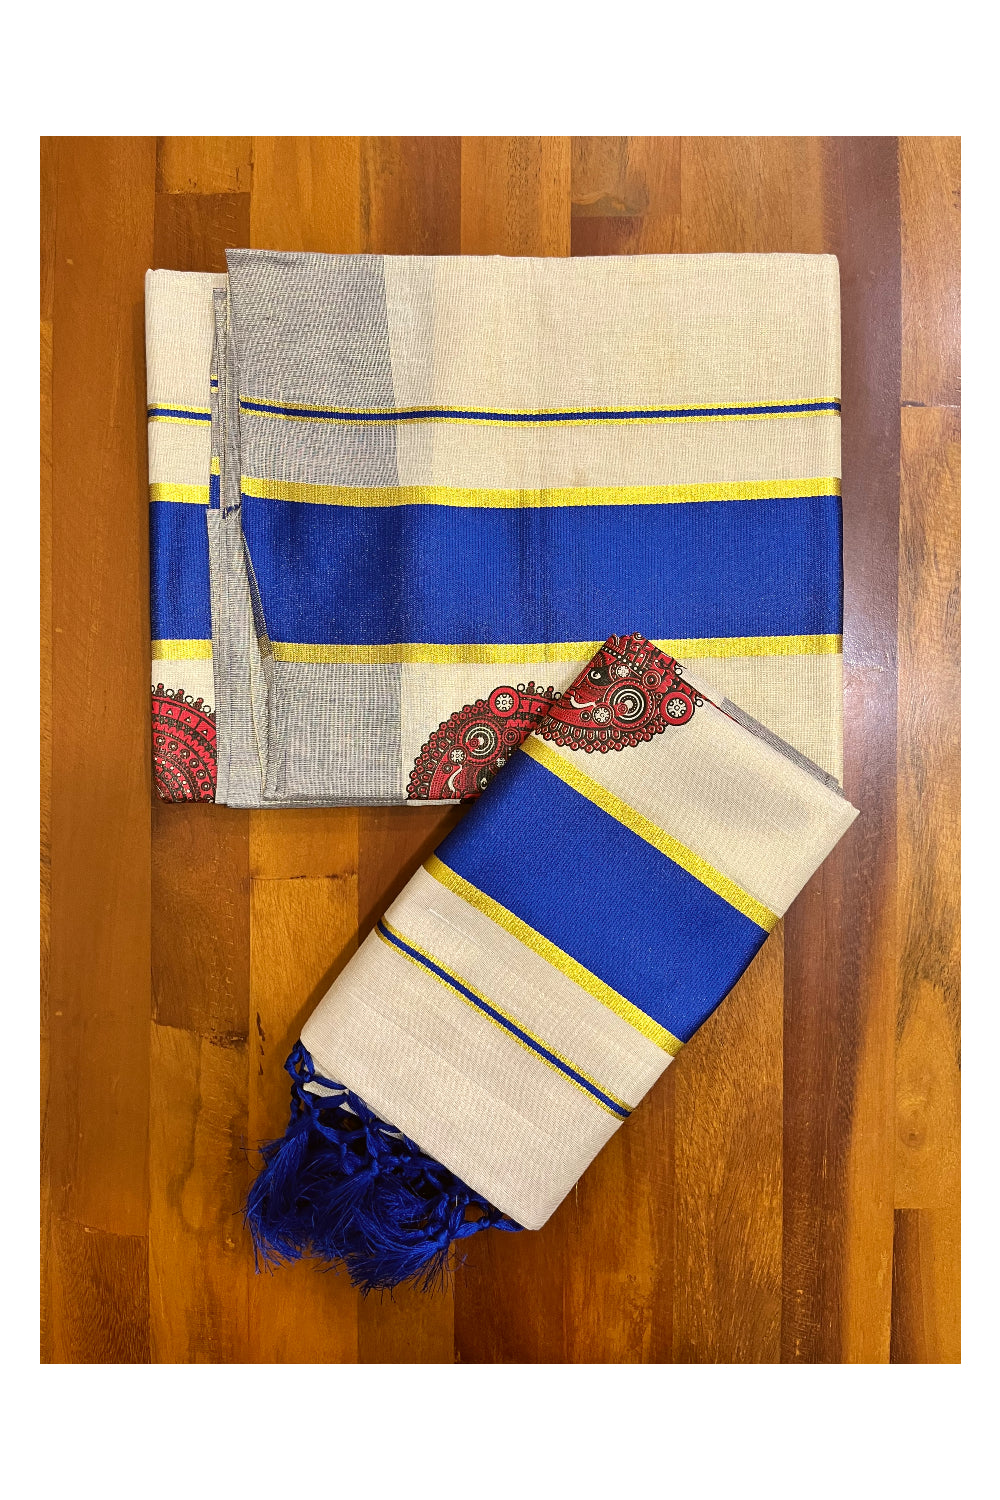 Kerala Tissue Single Set Mundu (Mundum Neriyathum) with Theyyam Block Prints and Blue Border